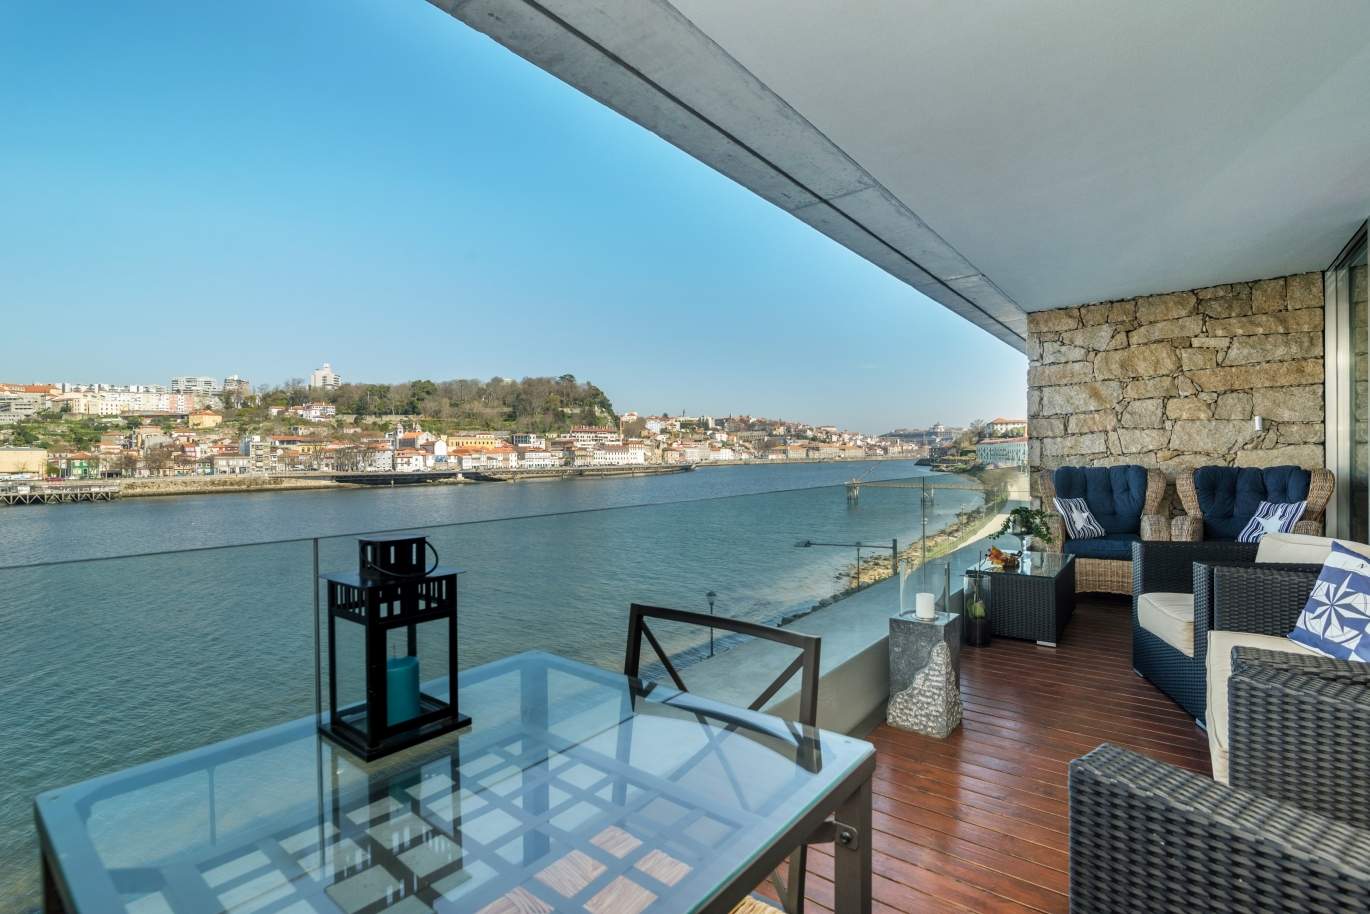 Venda apartamento de luxo com vistas rio, V. N. Gaia, Porto, Portugal_99247